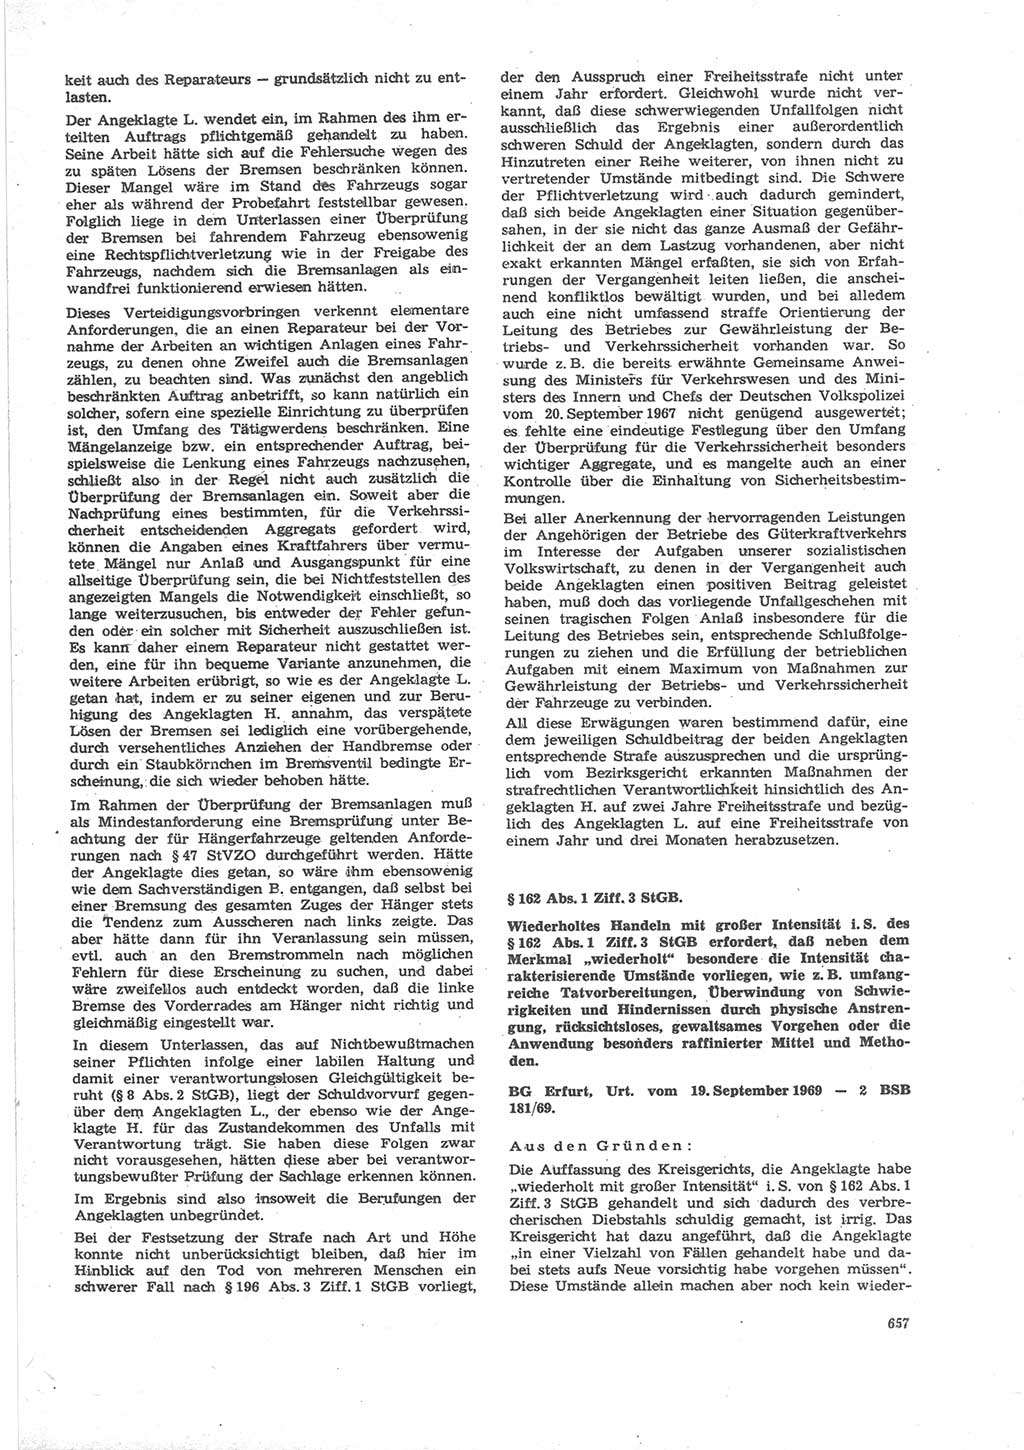 Neue Justiz (NJ), Zeitschrift für Recht und Rechtswissenschaft [Deutsche Demokratische Republik (DDR)], 24. Jahrgang 1970, Seite 657 (NJ DDR 1970, S. 657)